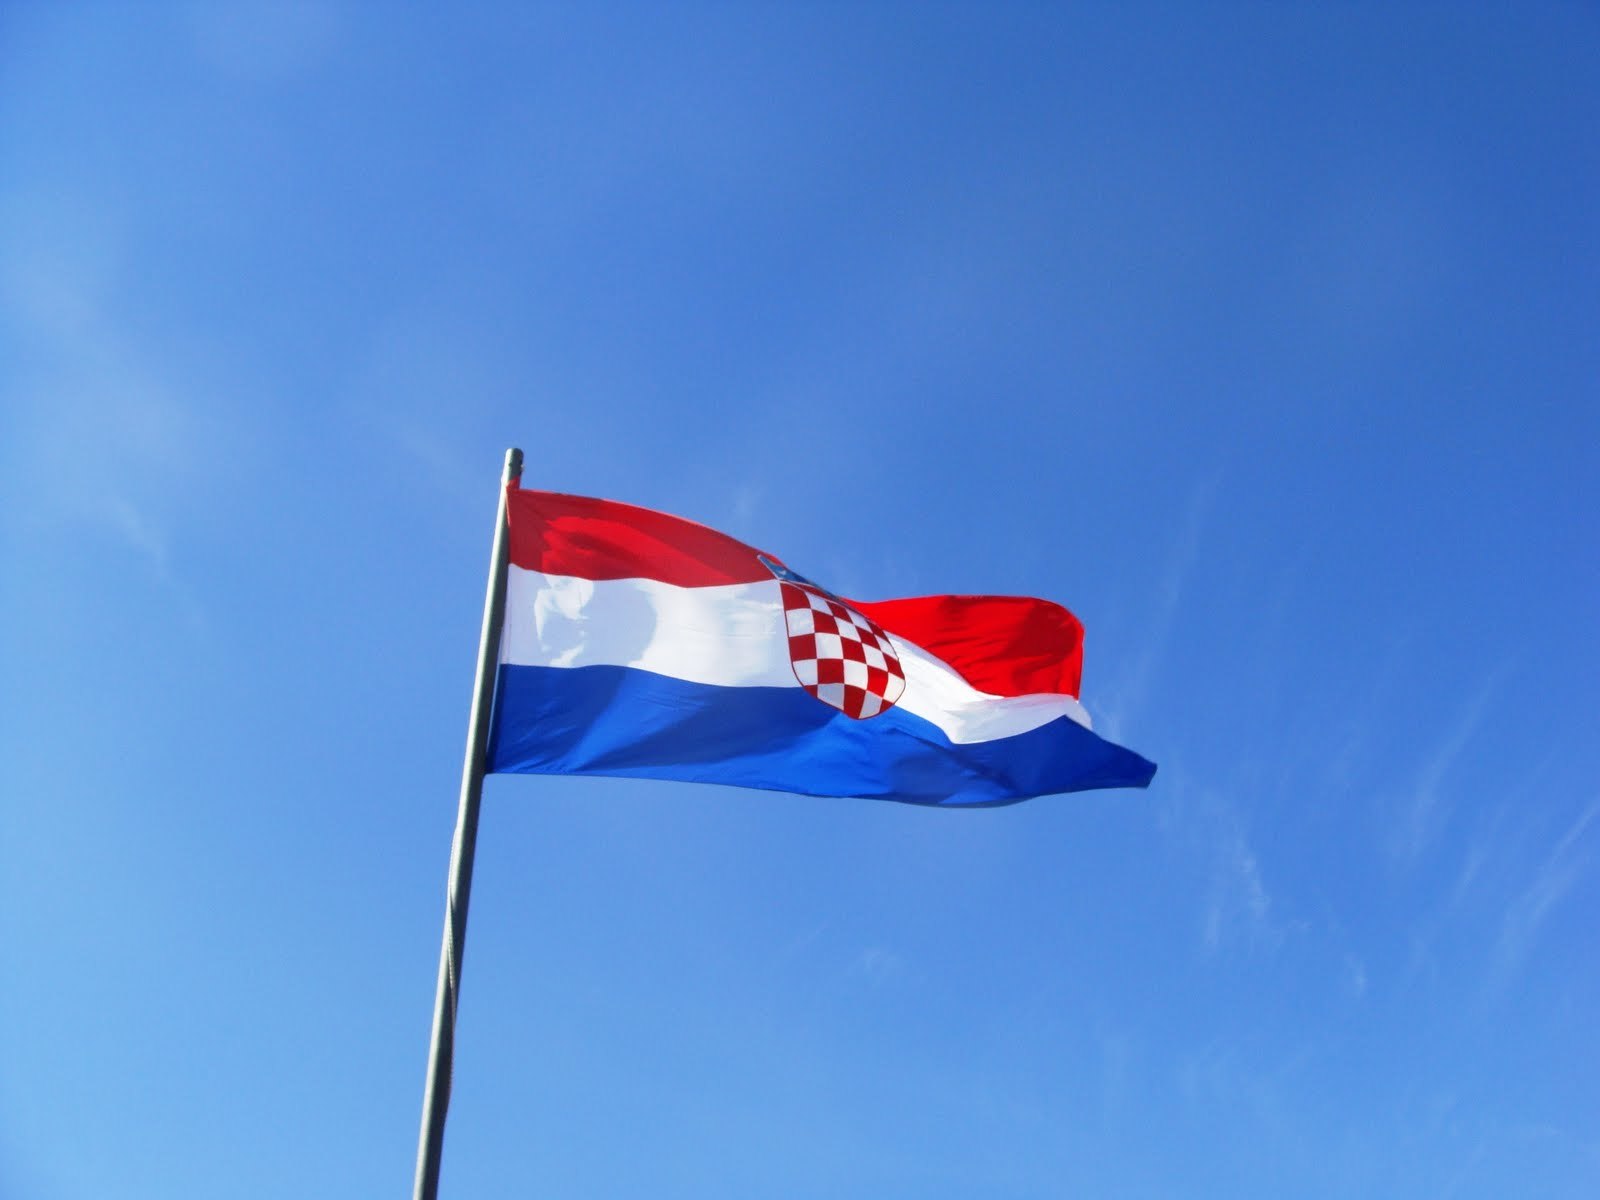 Άνοιξε ο δρόμος για την ένταξη της Κροατίας στην ΕΕ